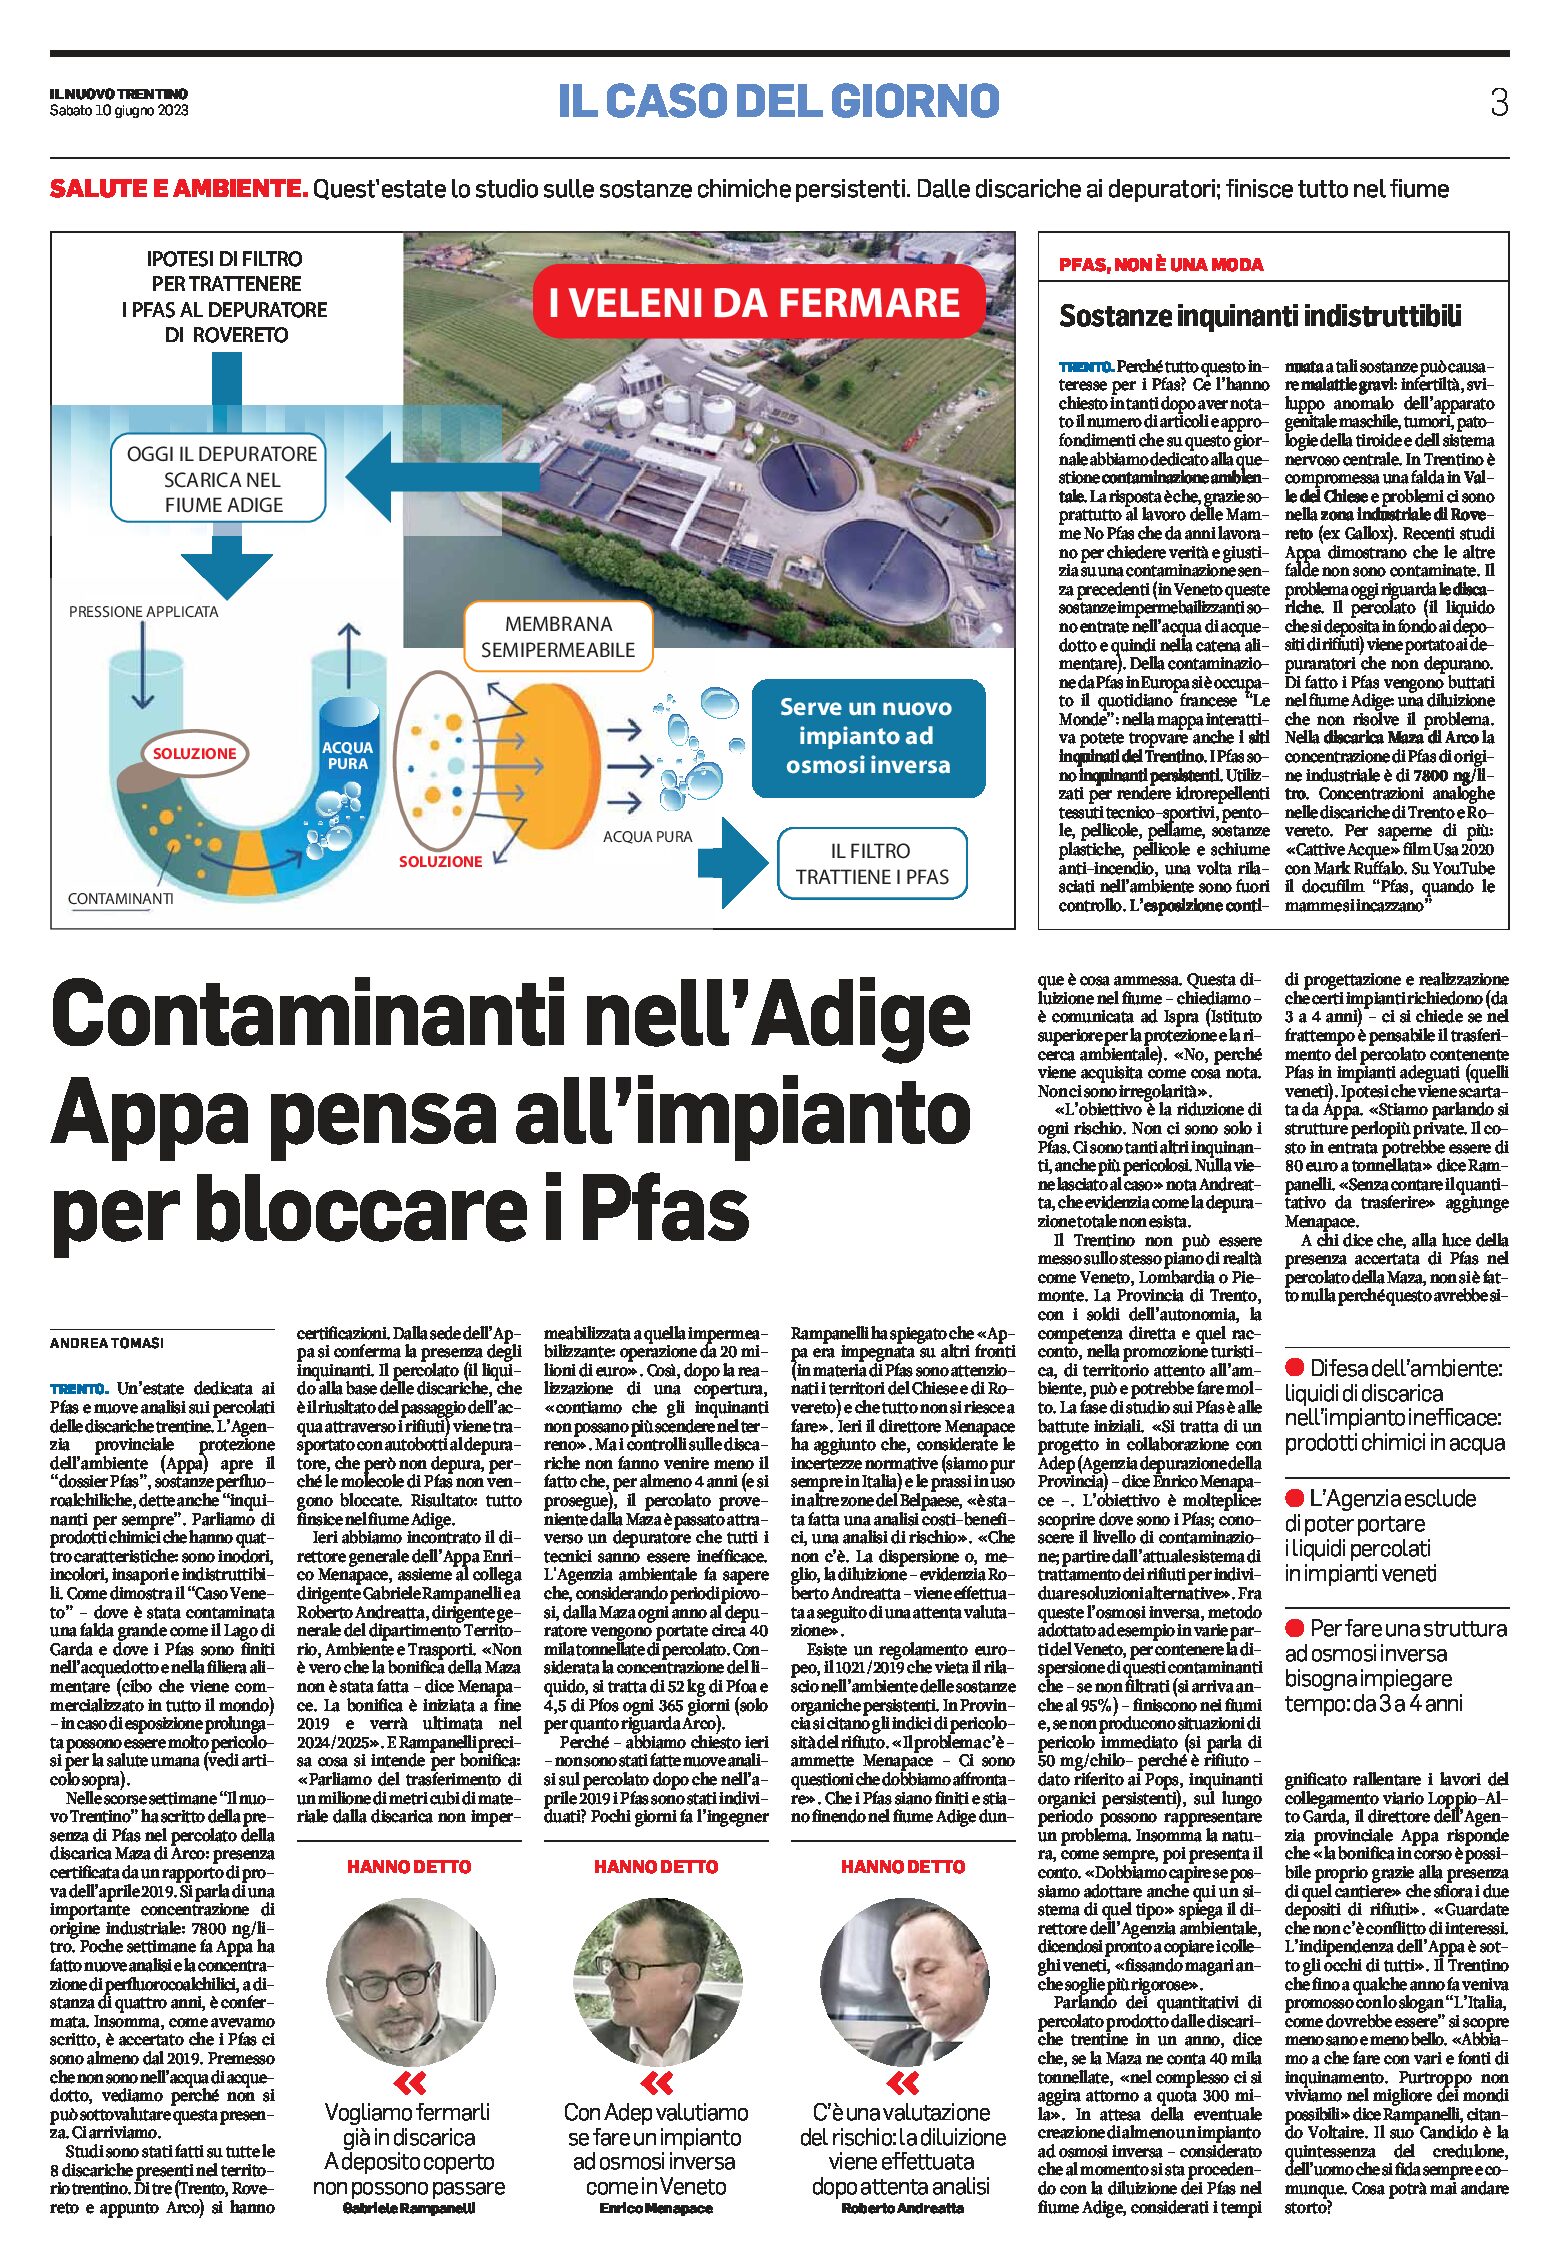 Contaminanti nell’Adige: Appa pensa all’impianto per bloccare i Pfas